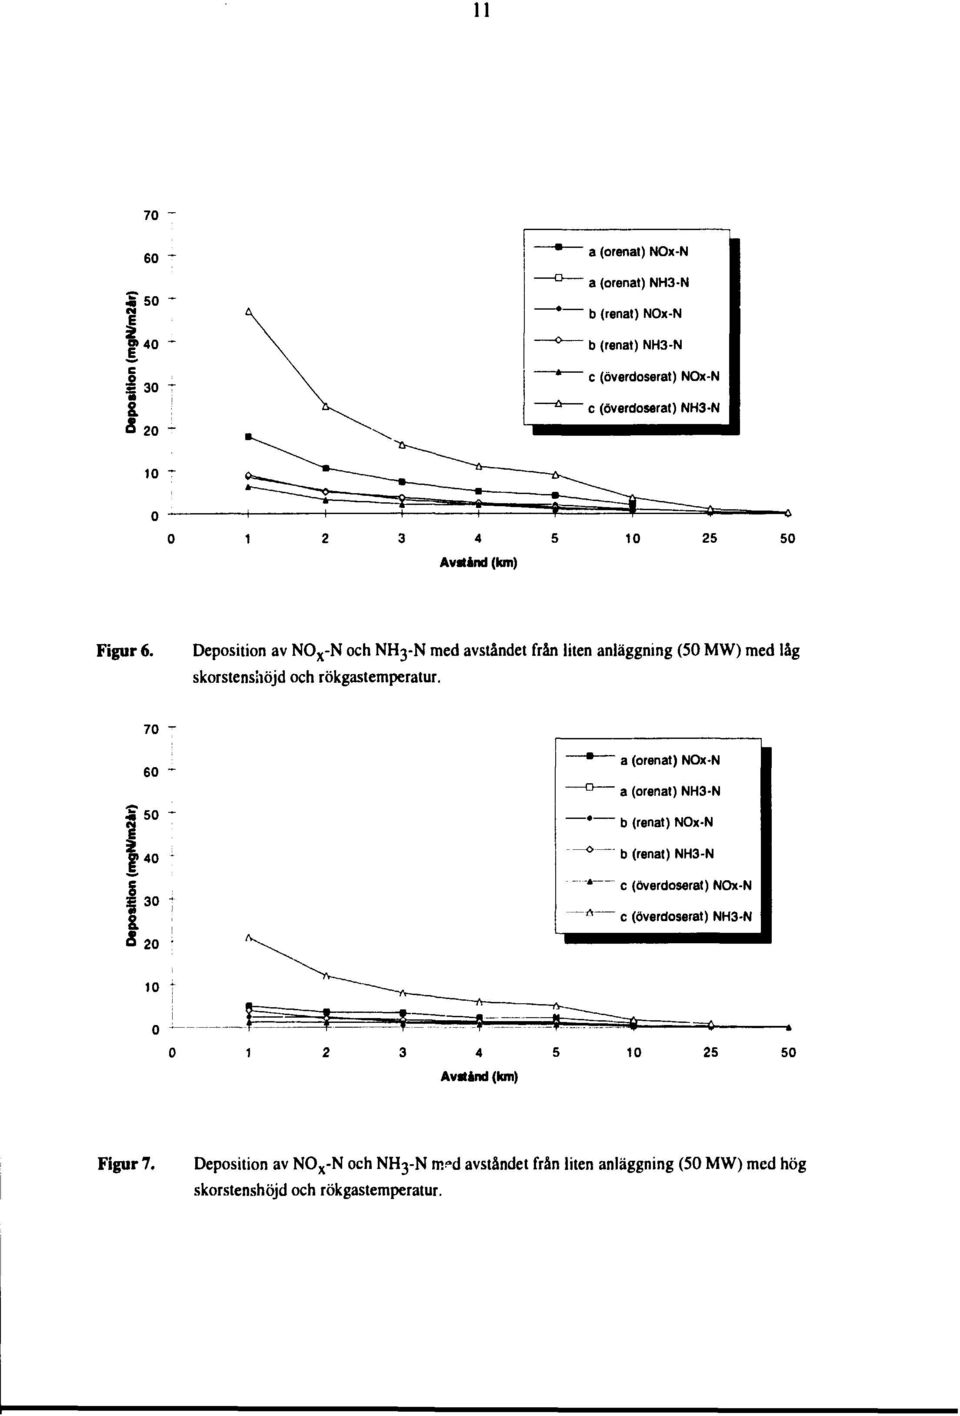 Deposition av NO X -N och NH-N med avståndet från liten anläggning (0 MW) med låg skorstenshöjd och rökgastemperatur.